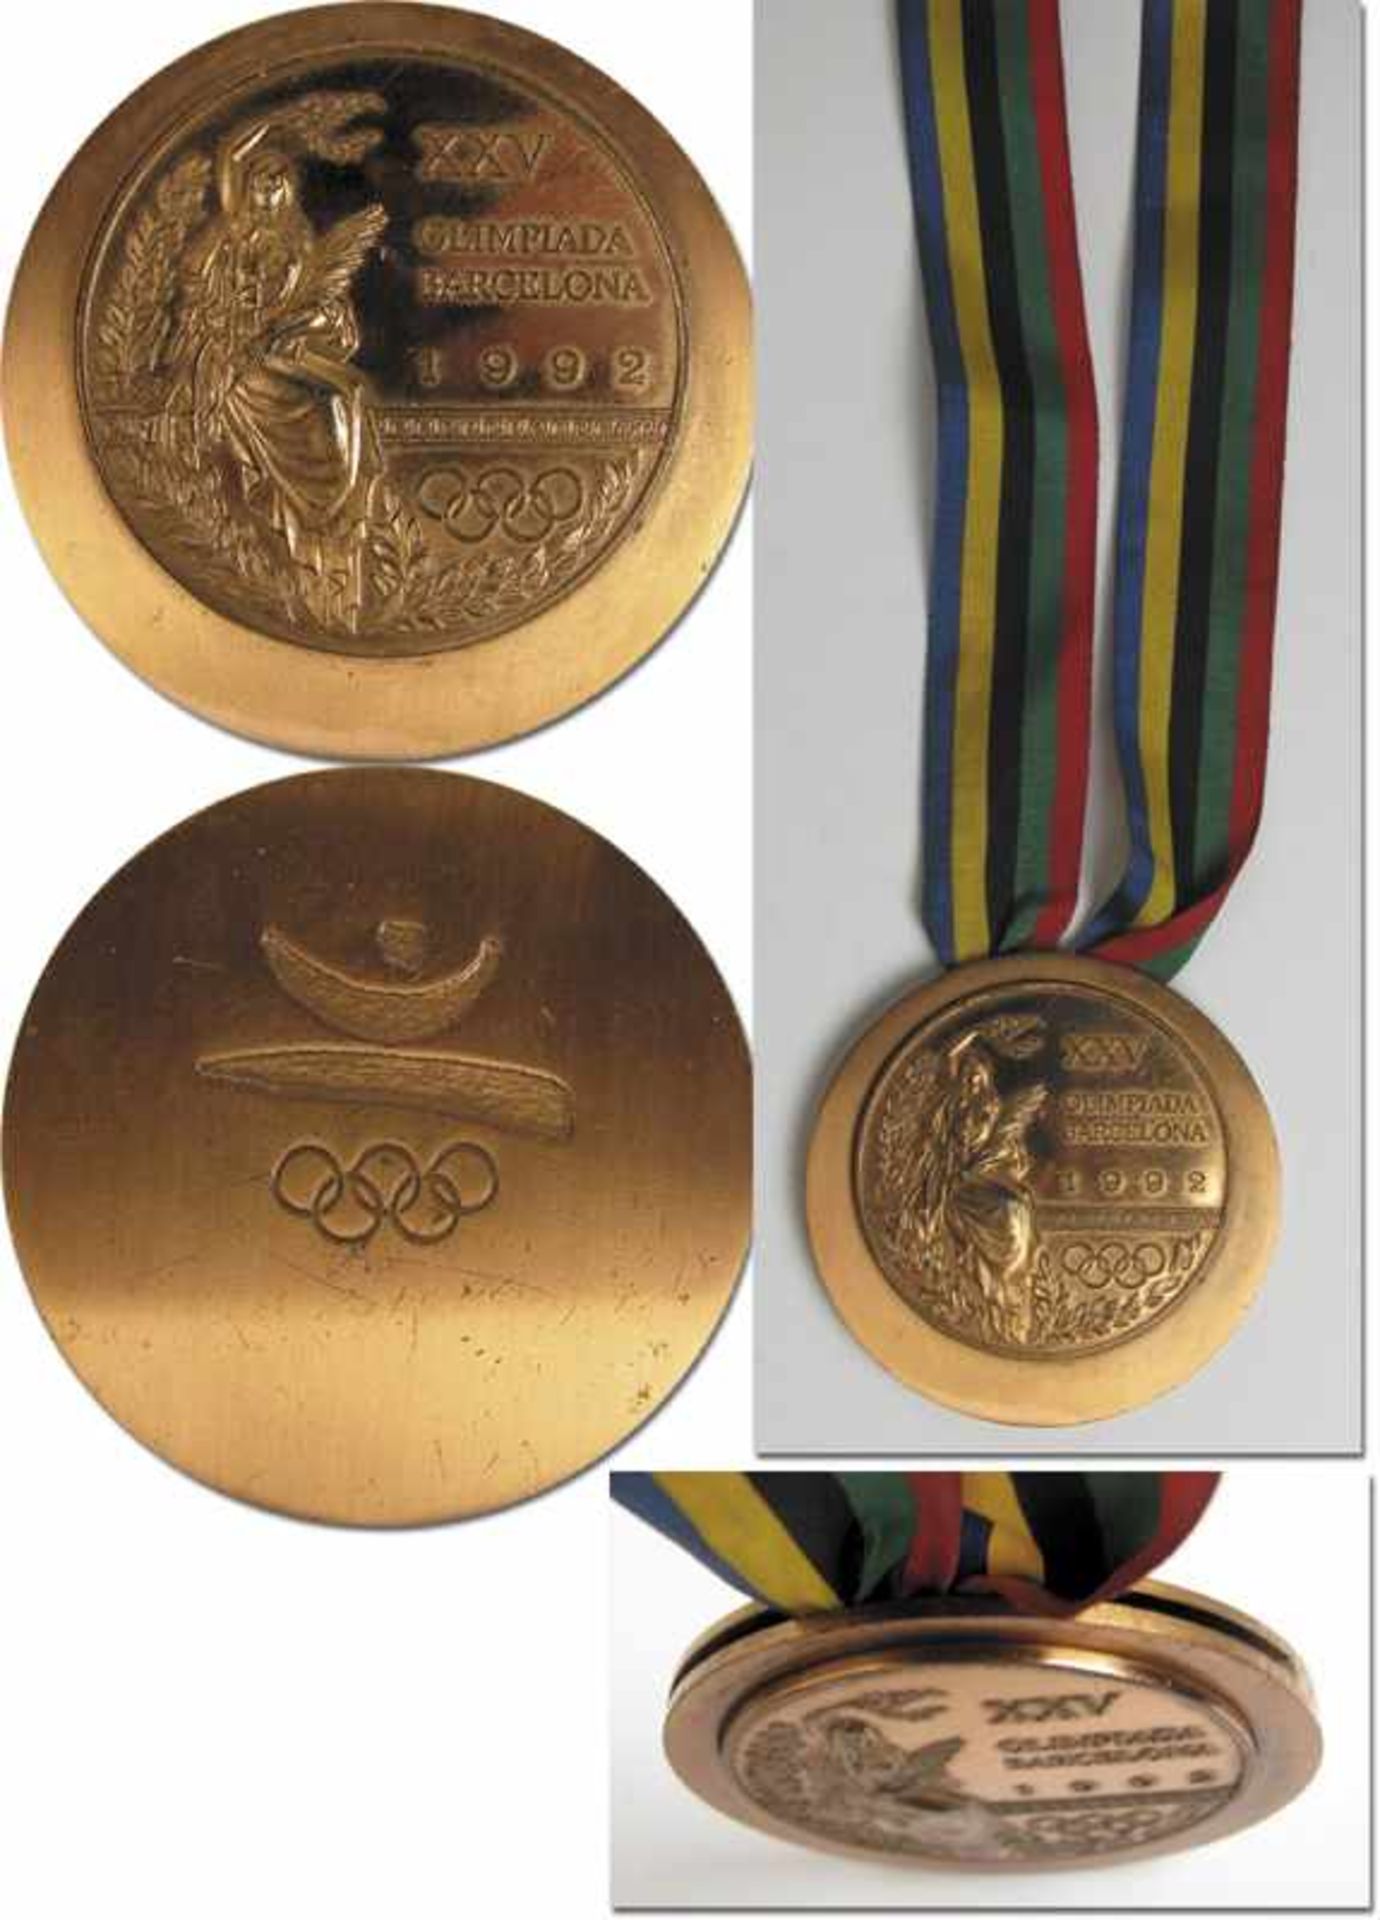 Olympic Games 1992. Bronze Winner's medal COA - Original bronze medal from the Olympic Games in